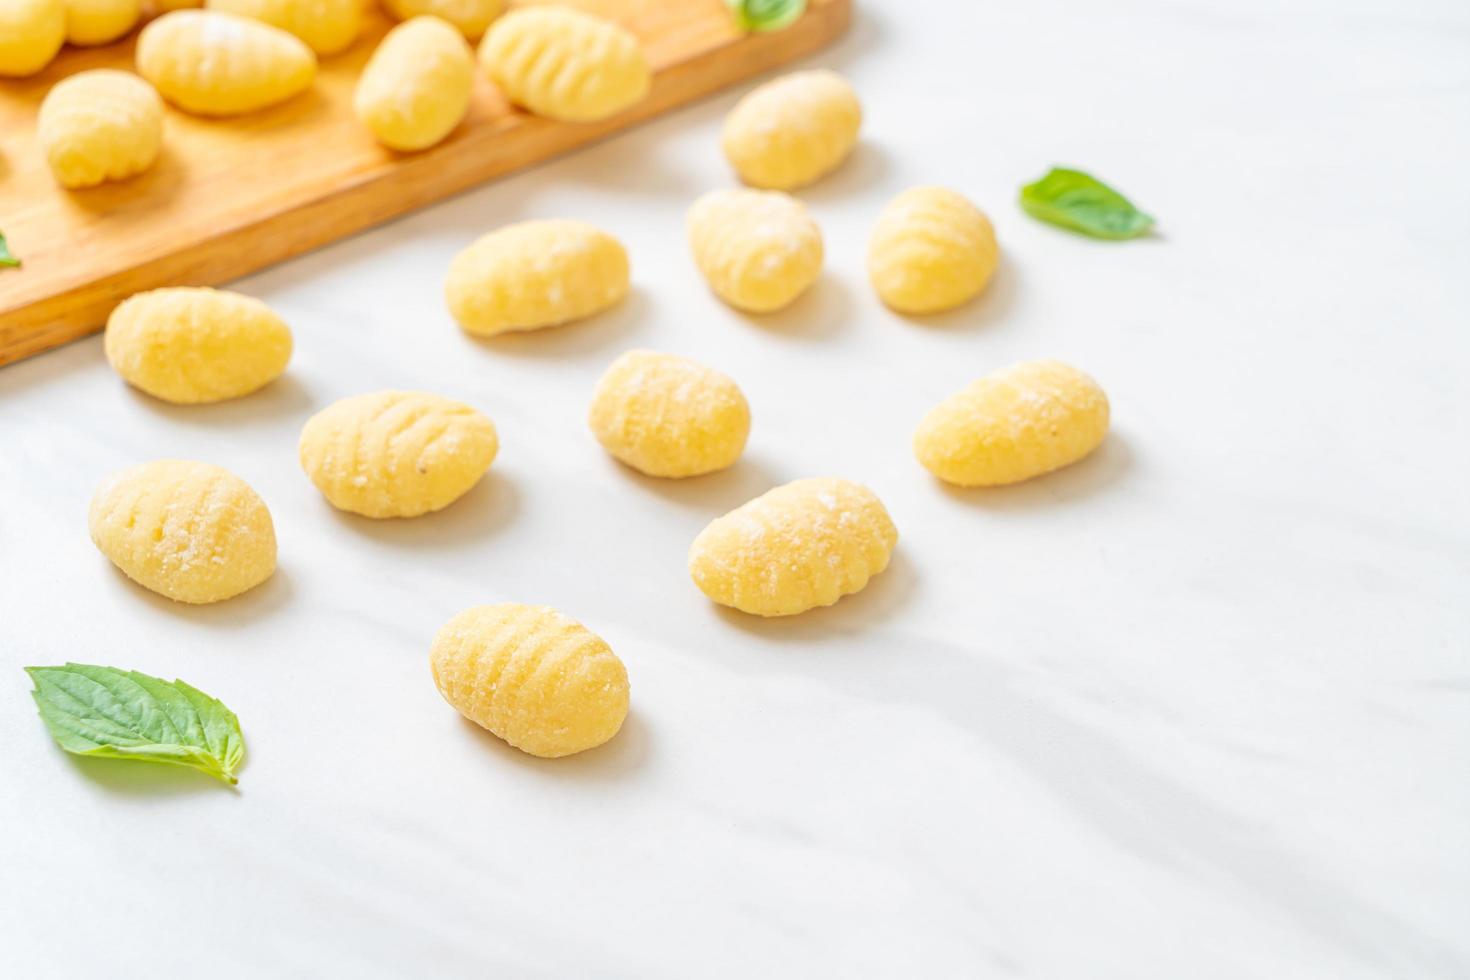 traditionele Italiaanse gnocchi-pasta ongekookt foto